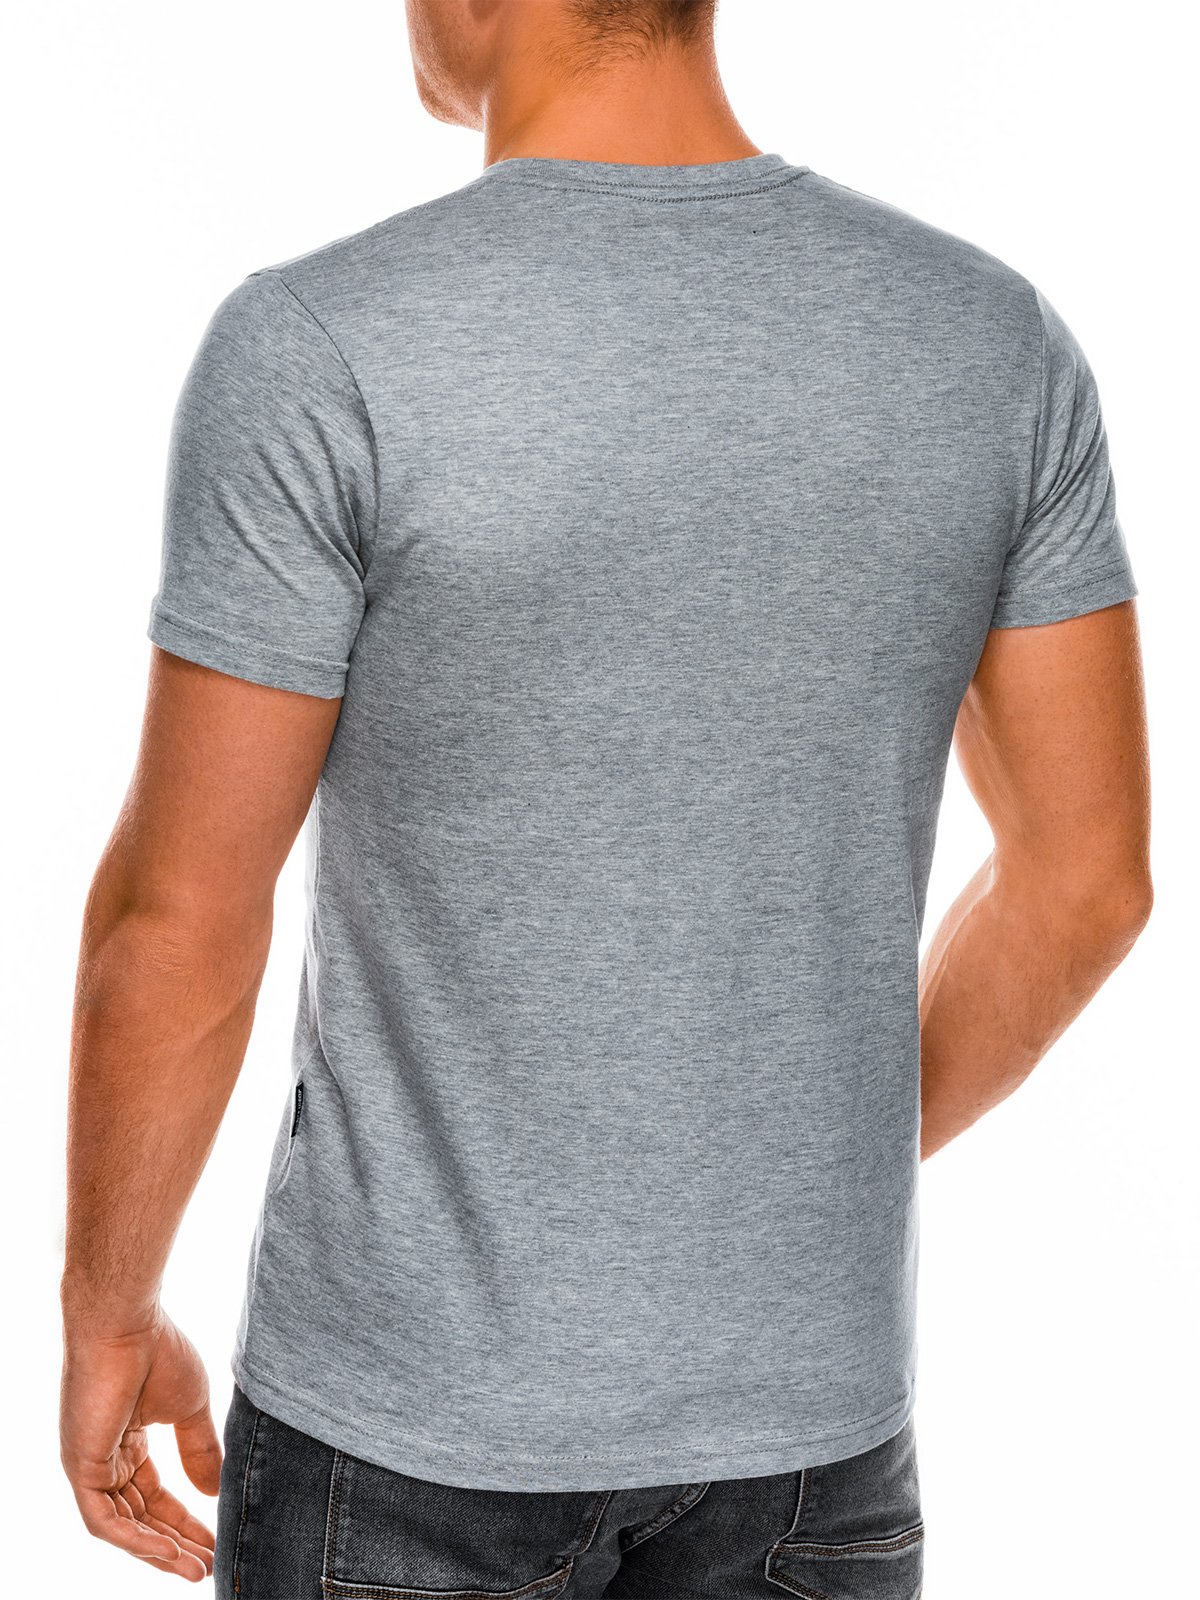 Men's plain t-shirt S884 - grey | MODONE wholesale - Clothing For Men